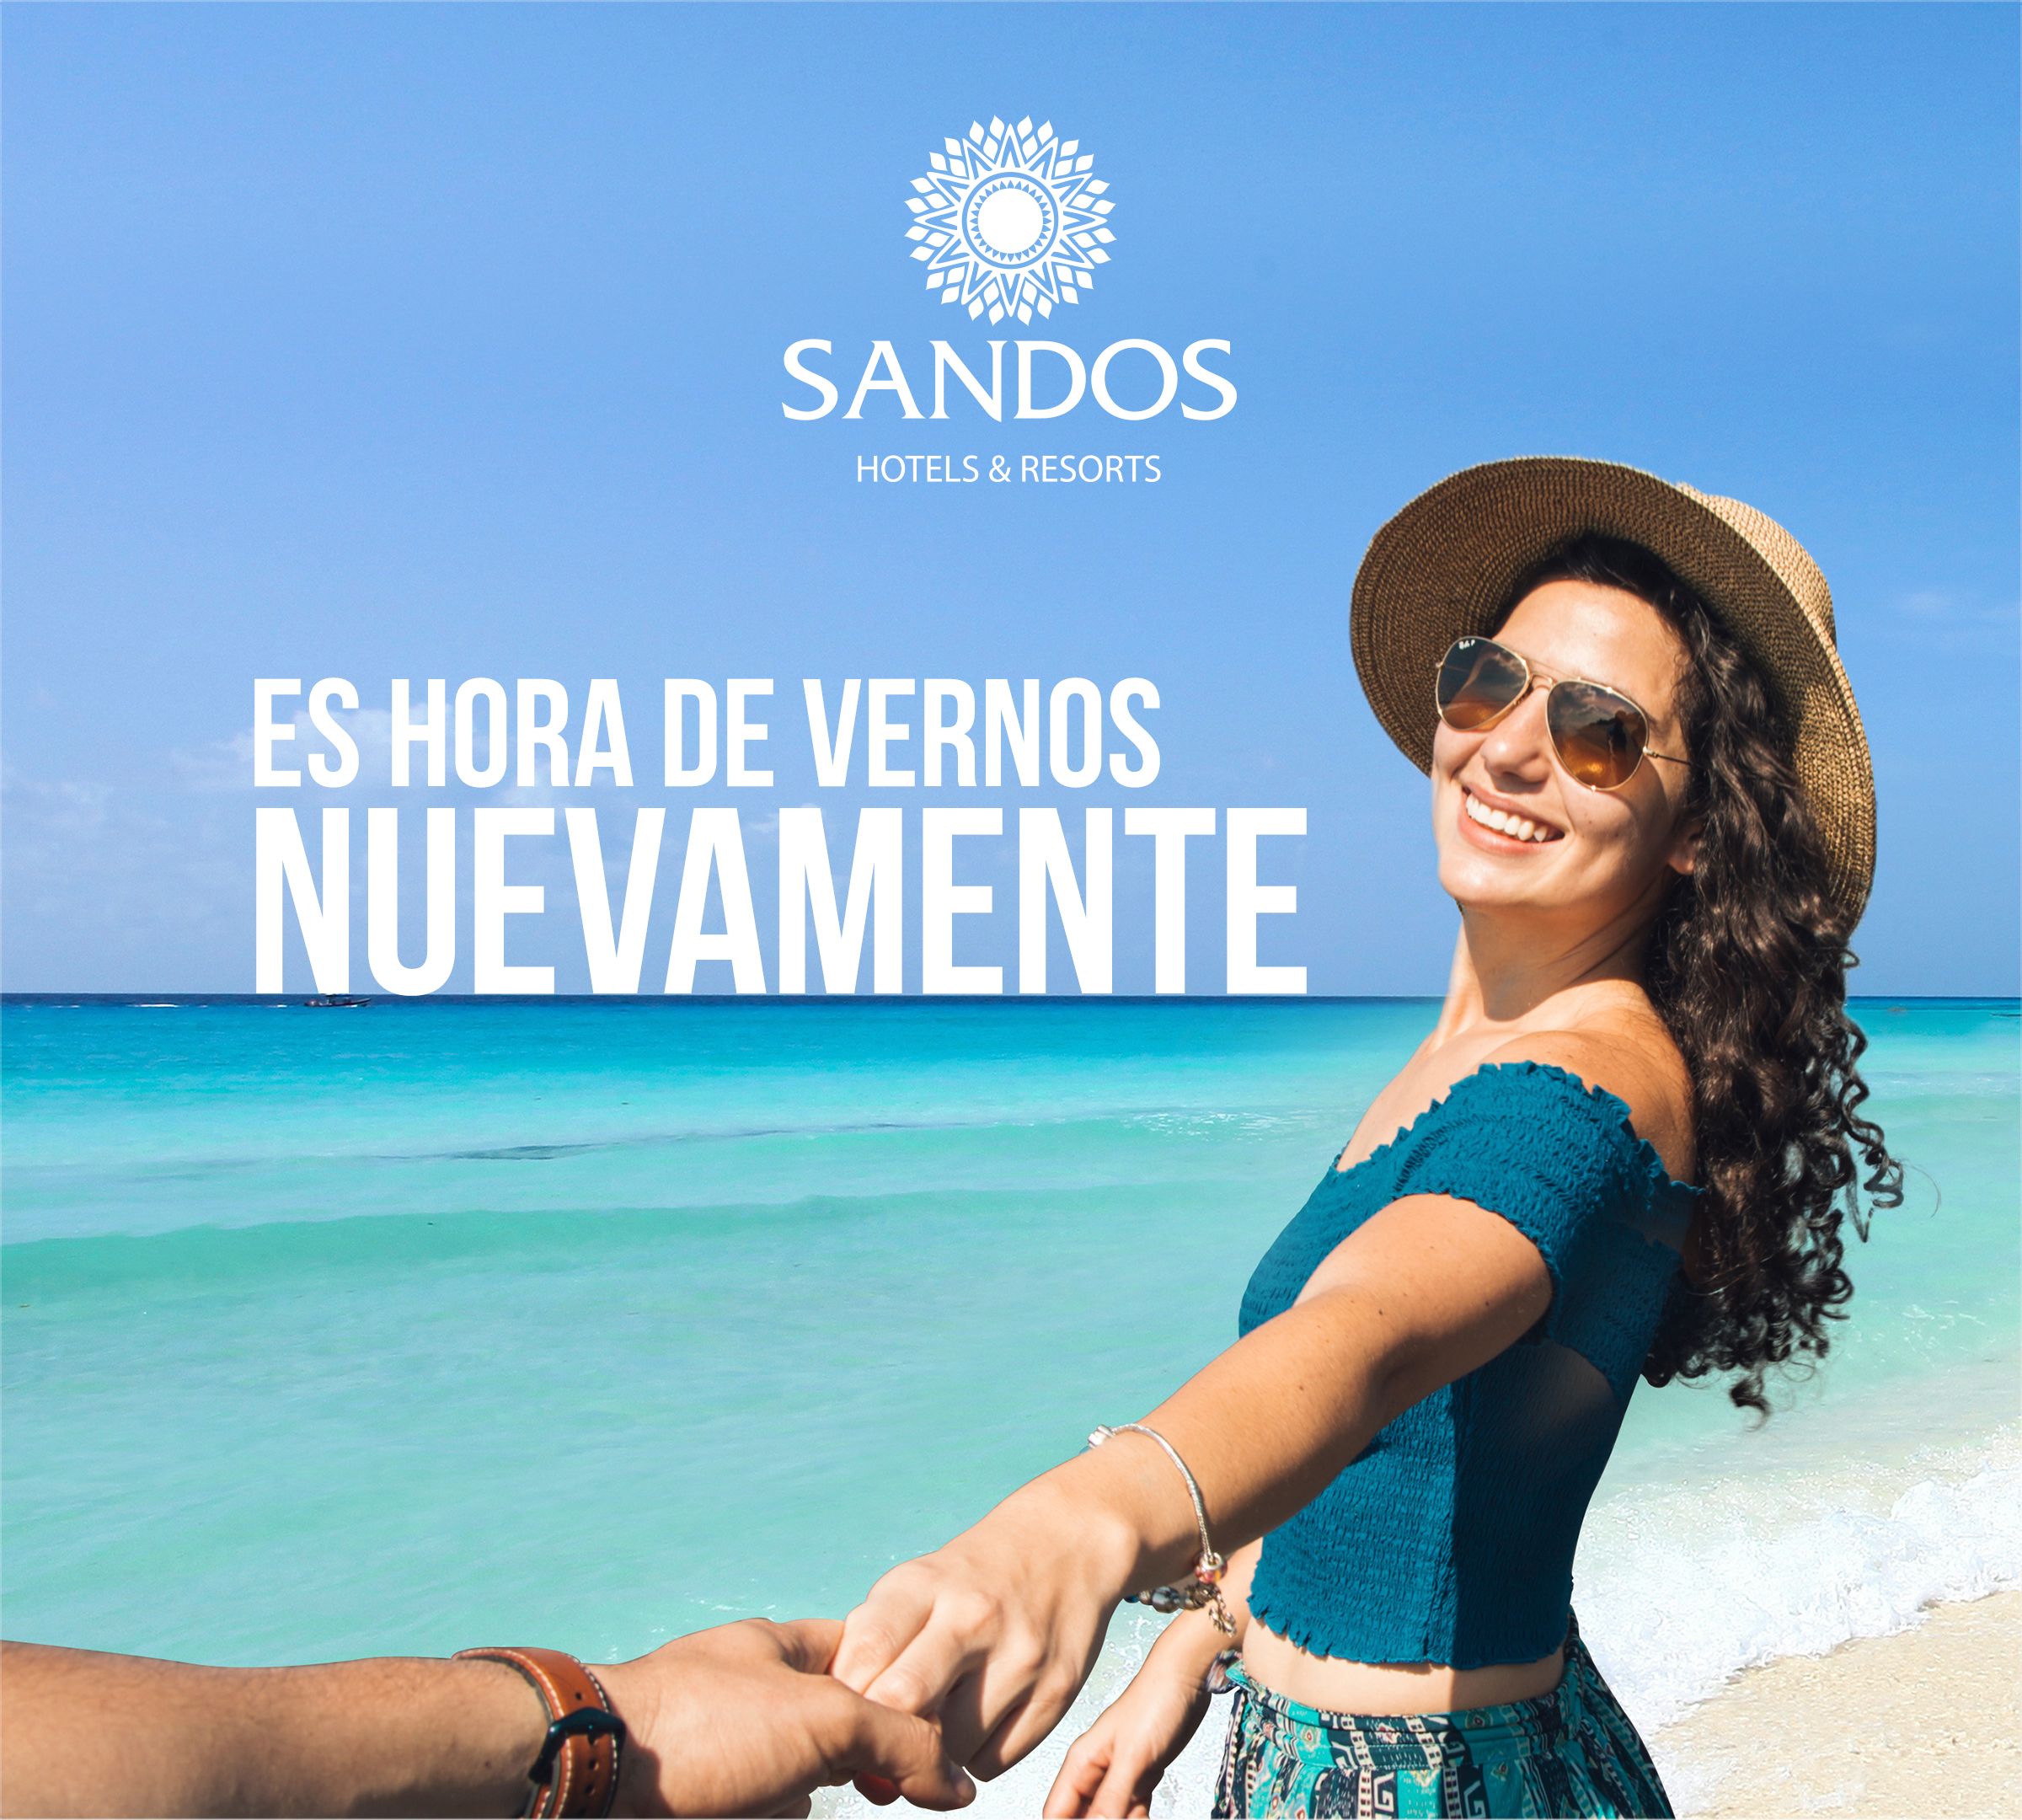 Sandos Hotels - ¡Es tiempo de vernos nuevamente!